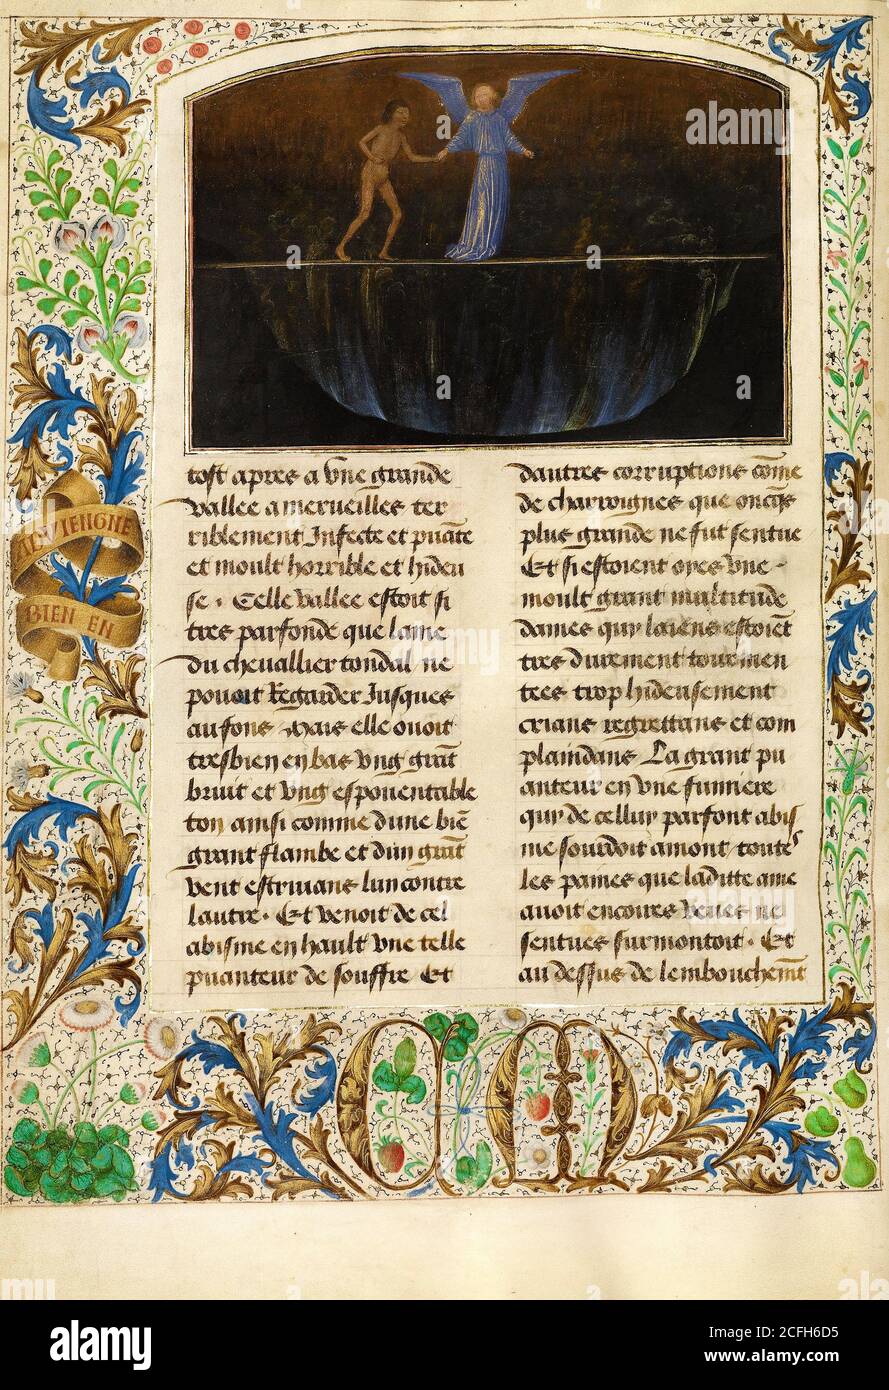 Simon Marmion, el Tormento de los orgullosos - Valle de azufre ardiente 1475 Tempera, oro, tinta sobre pergamino, el Museo J. Paul Getty, los Angeles, EE.UU. Foto de stock